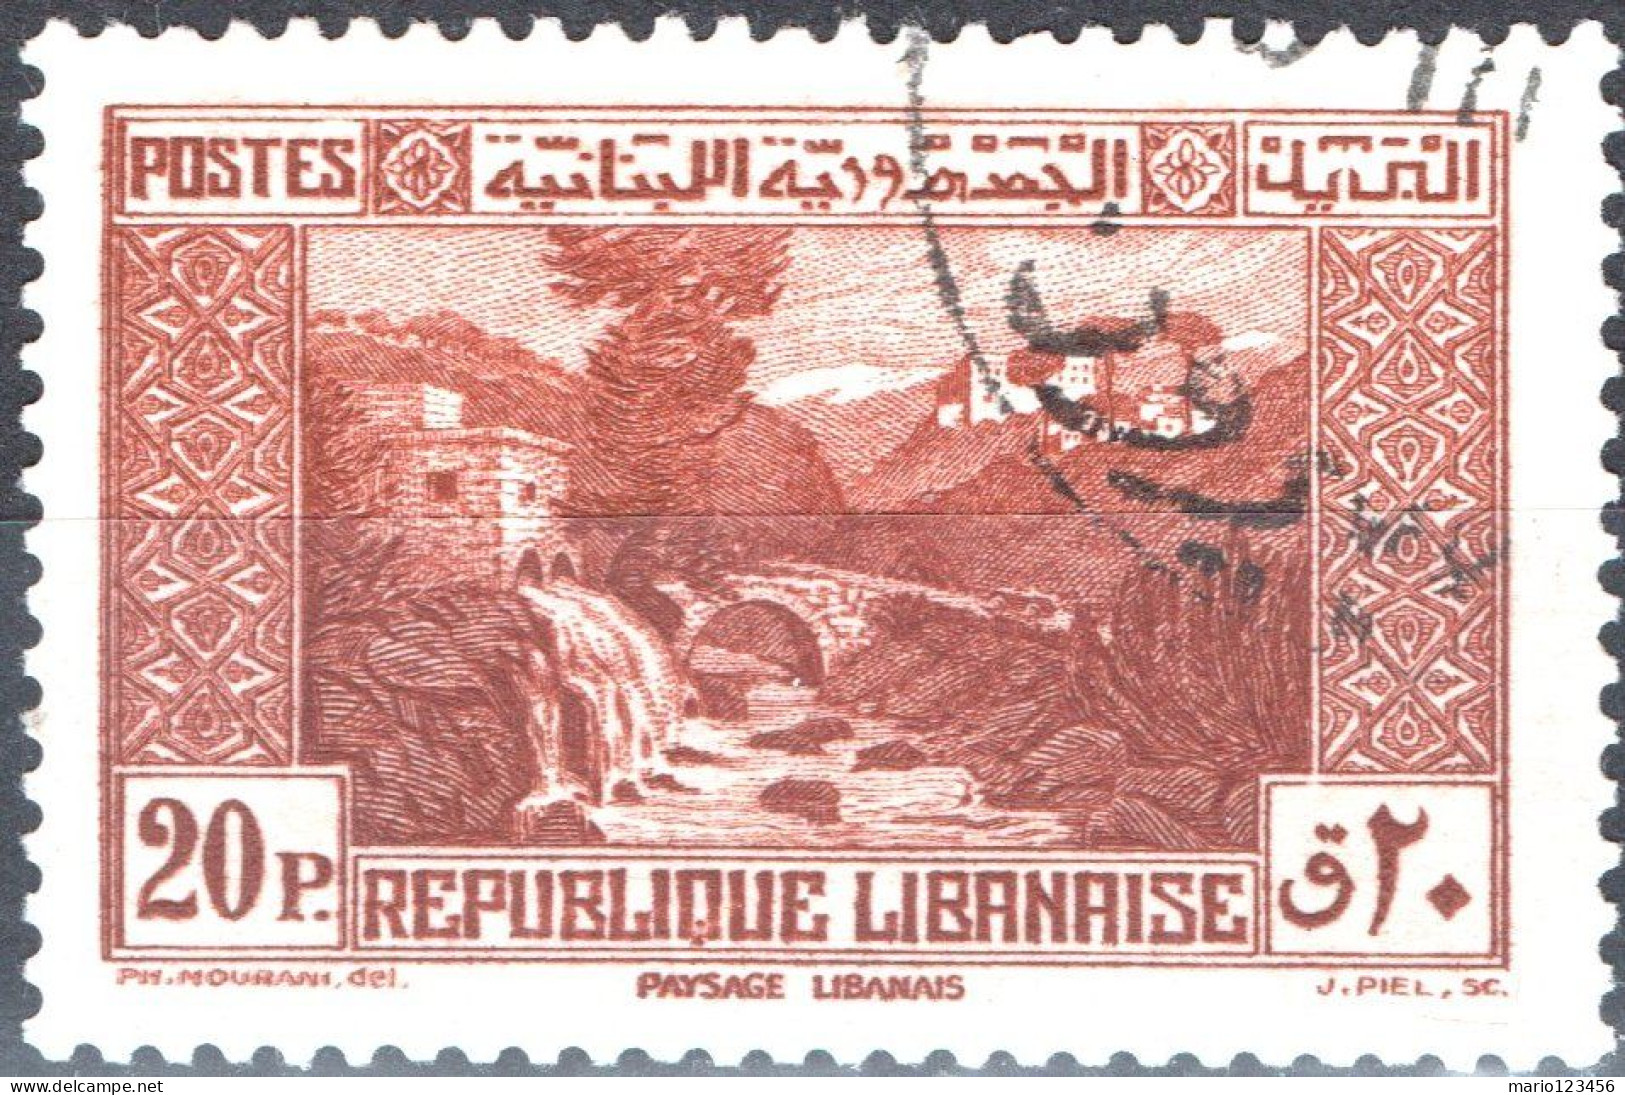 LIBANO, LEBANON, PAESAGGI, LANDSCAPES, 1940, USATI Scott:LB 143A, Yt:FR-LB 172 - Usati